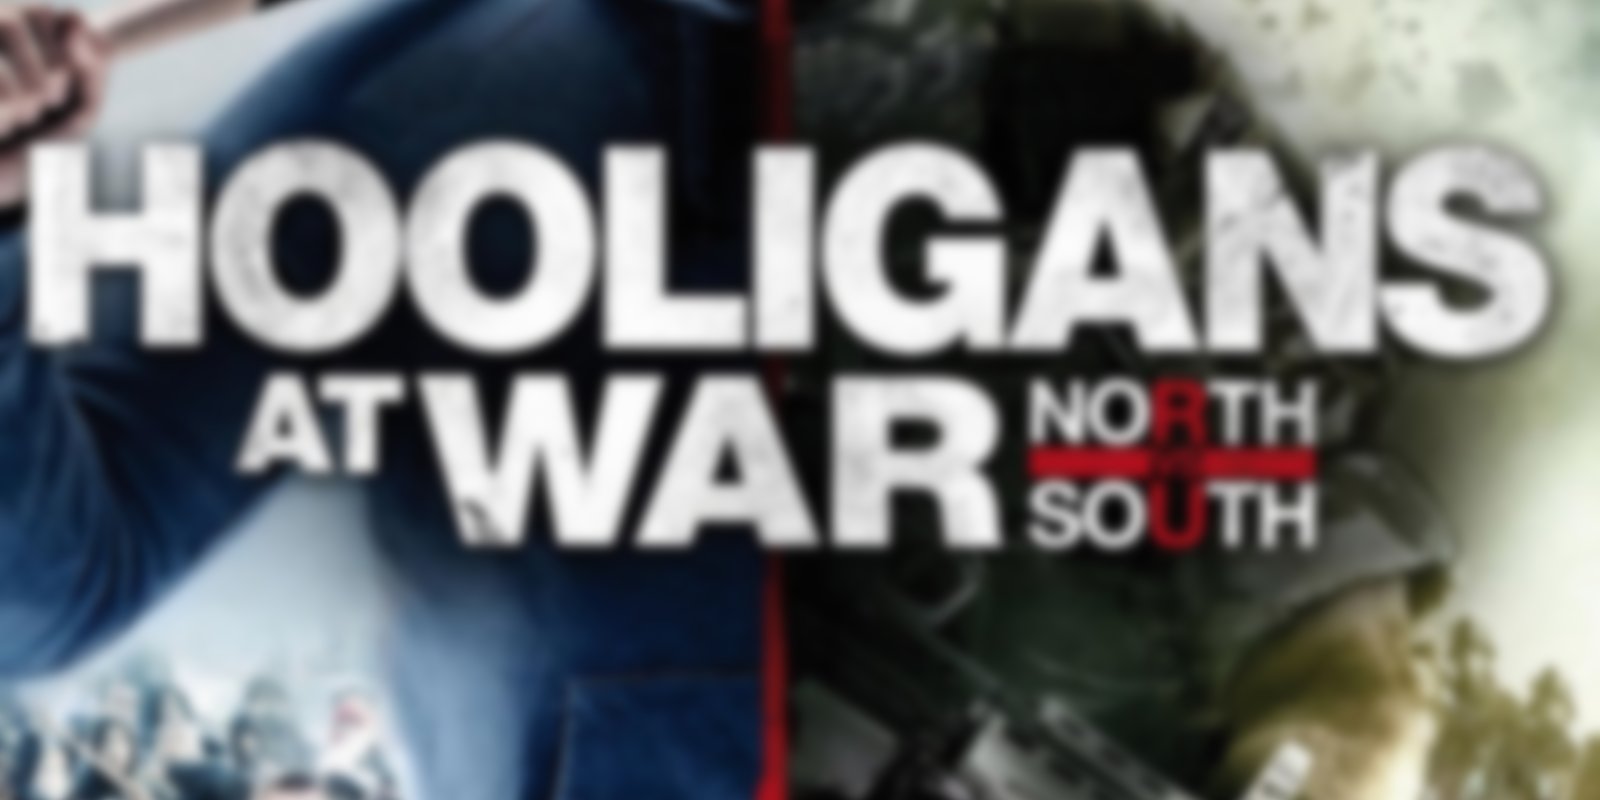 Hooligans at War - North vs. South